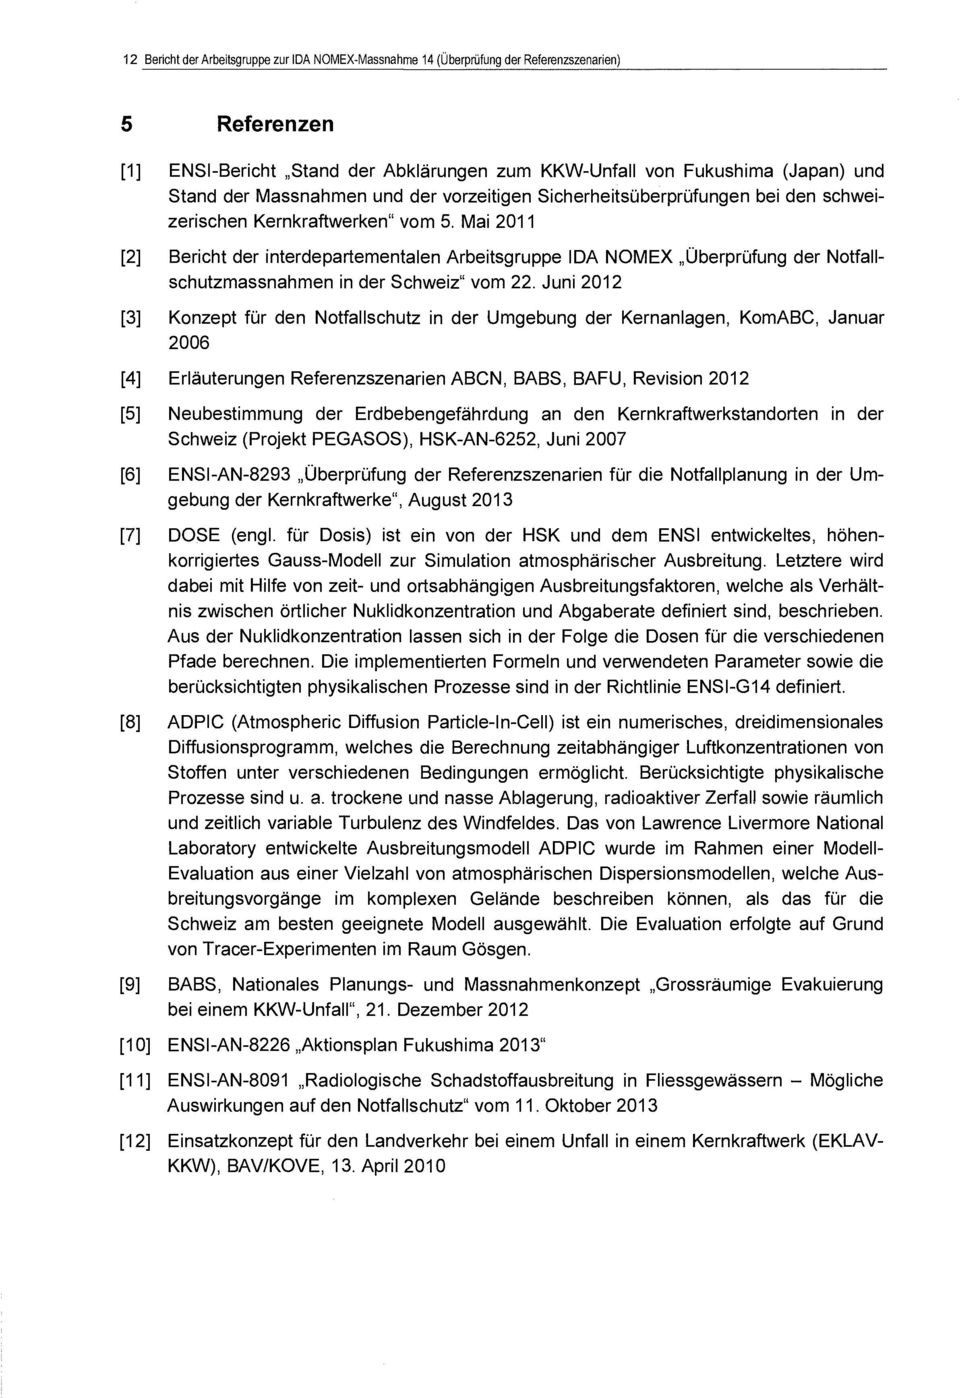 Mai 2011 [2] Bericht der interdepartementalen Arbeitsgruppe IDA NOME Überprüfung der Notfallschutzmassnahmen in der Schweiz" vom 22.